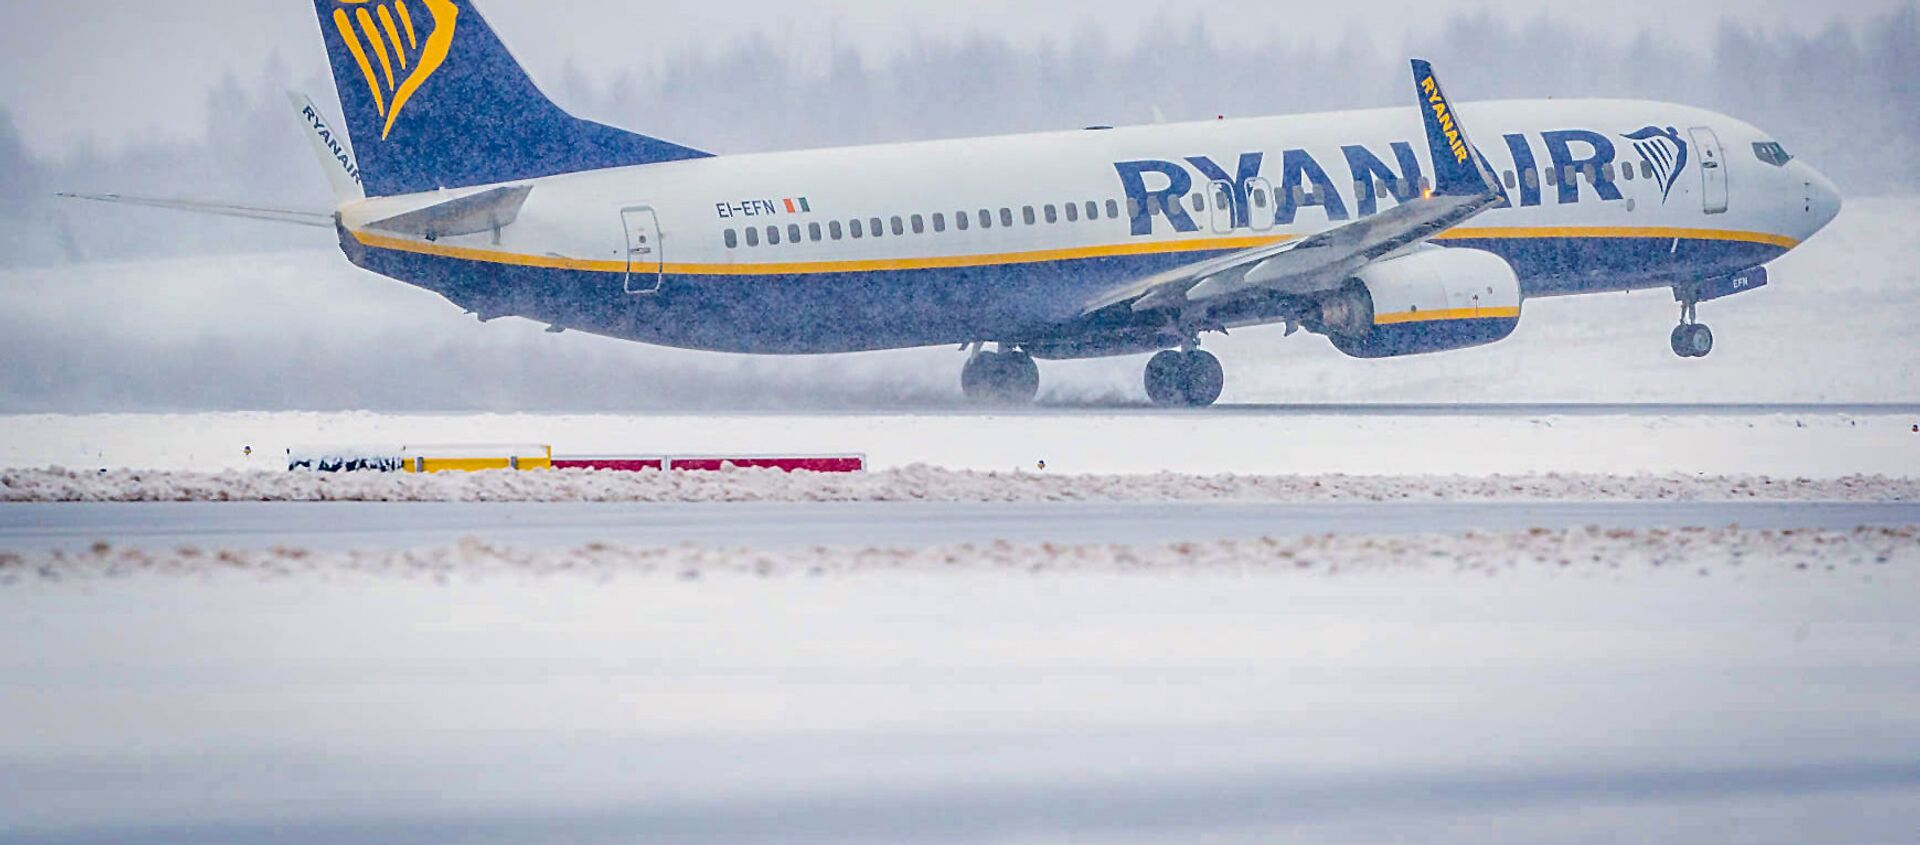 Самолет авиакомпании Ryanair взлетает из аэропорта Вильнюса - Sputnik Литва, 1920, 31.01.2021